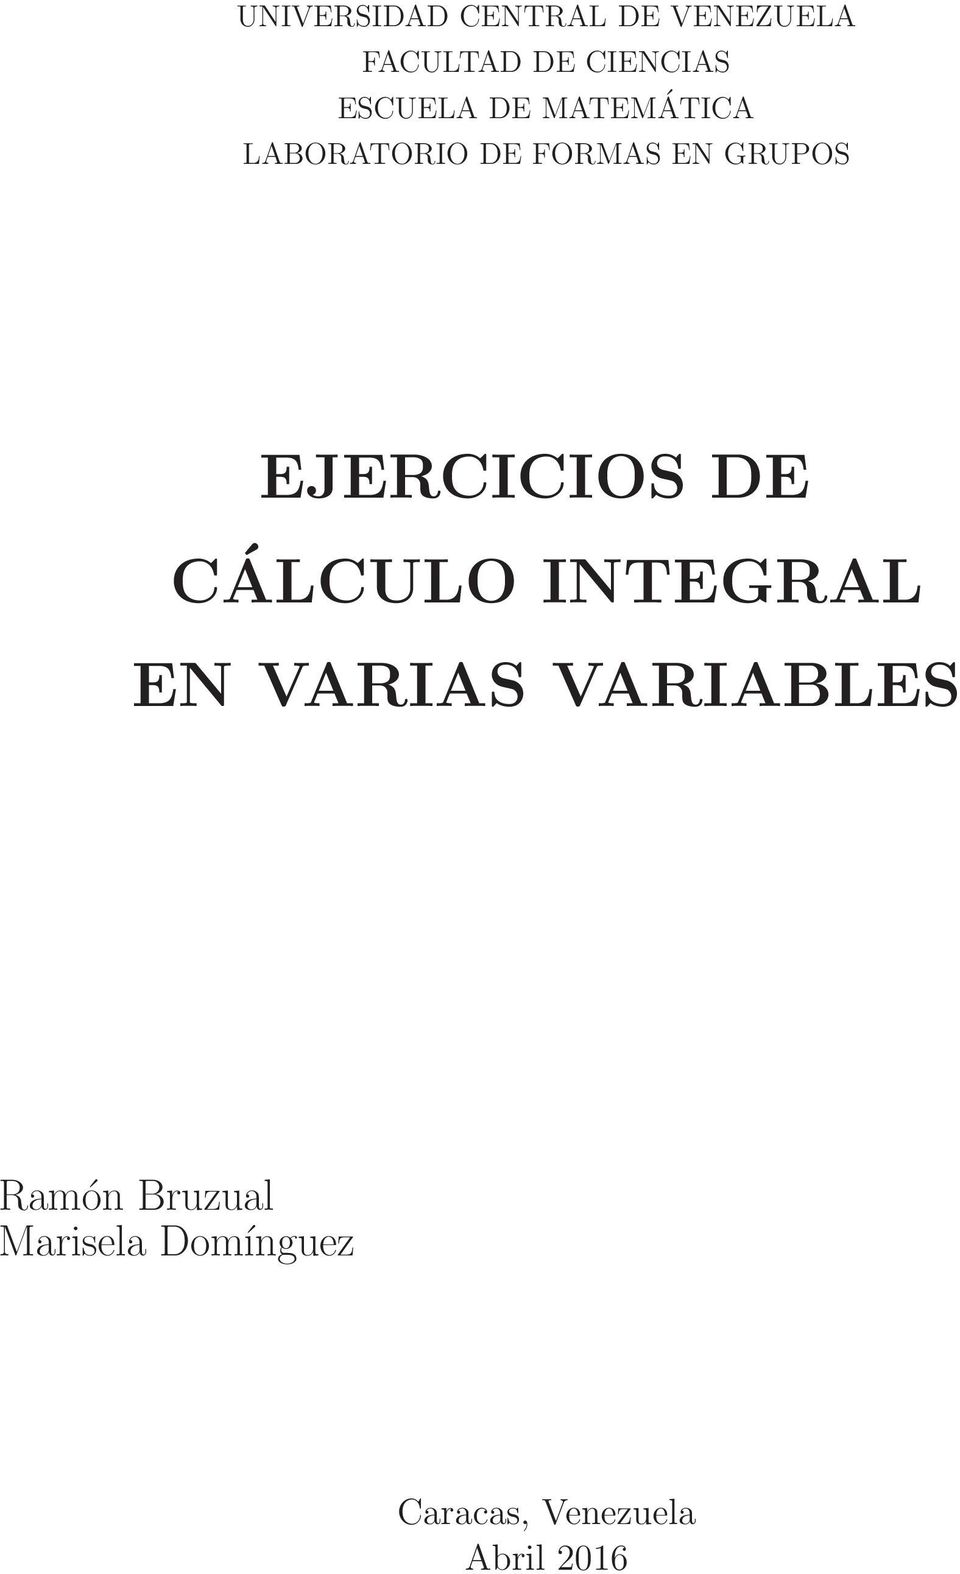 EJERCICIOS DE CÁLCULO INTEGRAL EN VARIAS VARIABLES